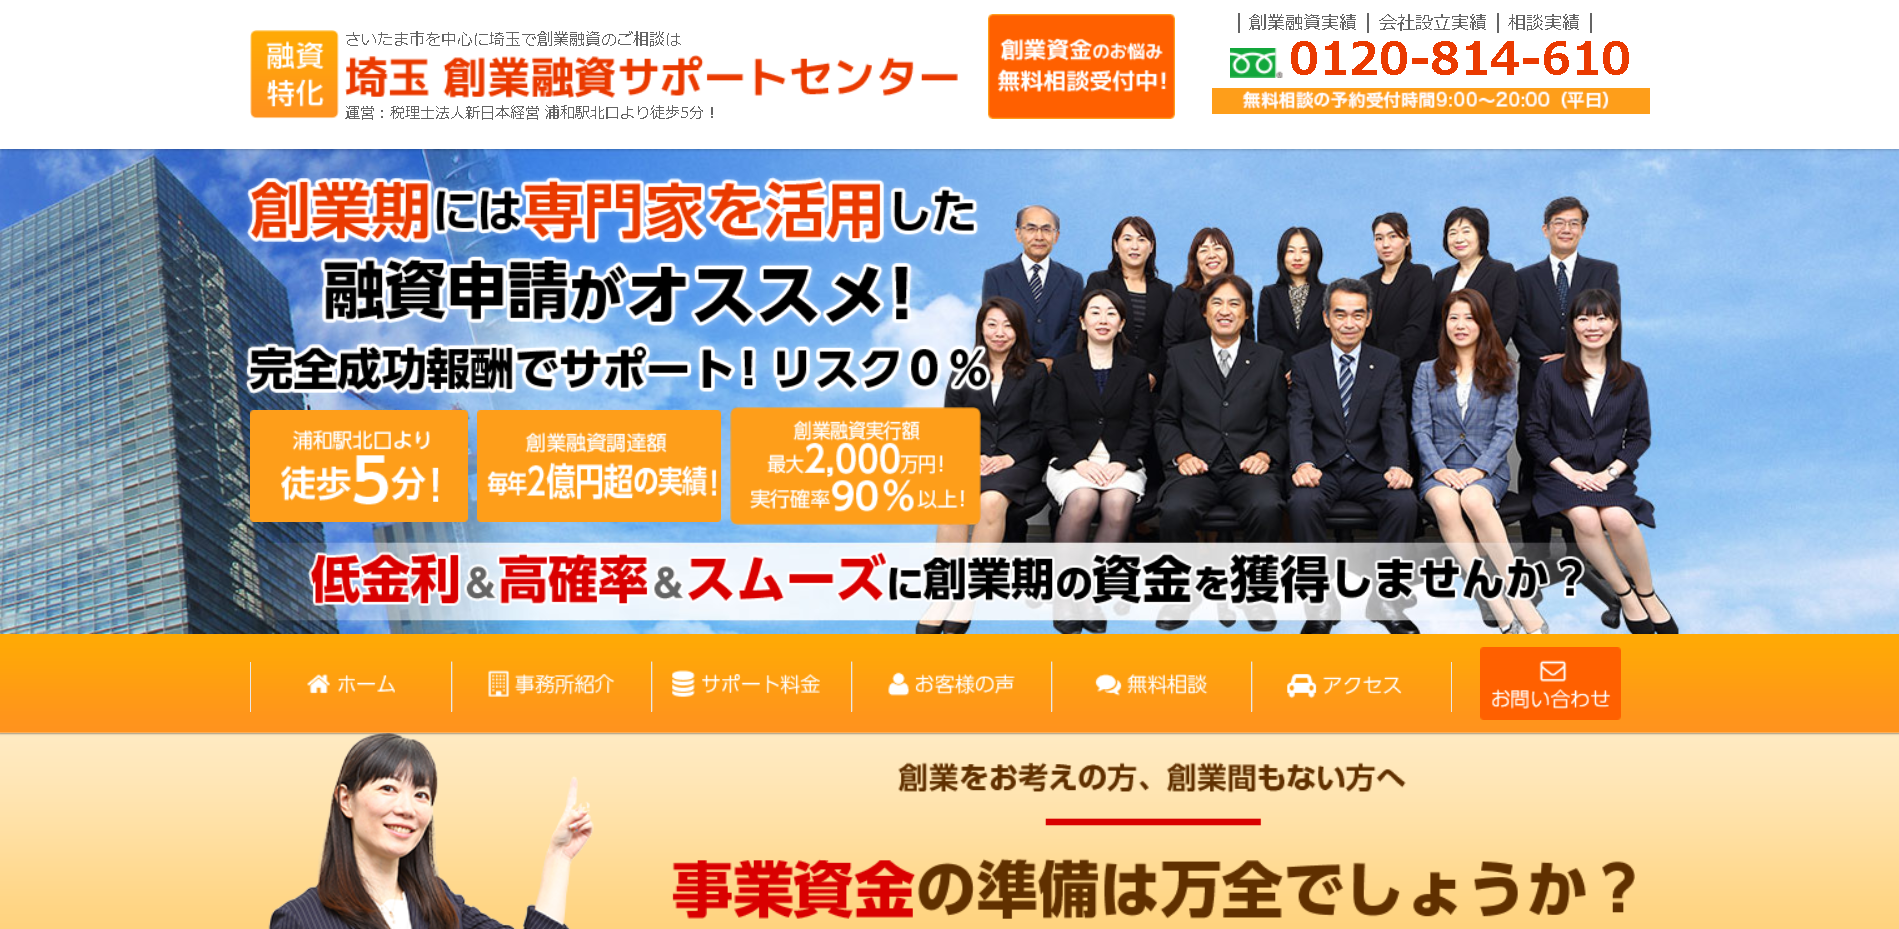 新日本経営会計事務所の埼玉 創業融資サポートセンターサービス